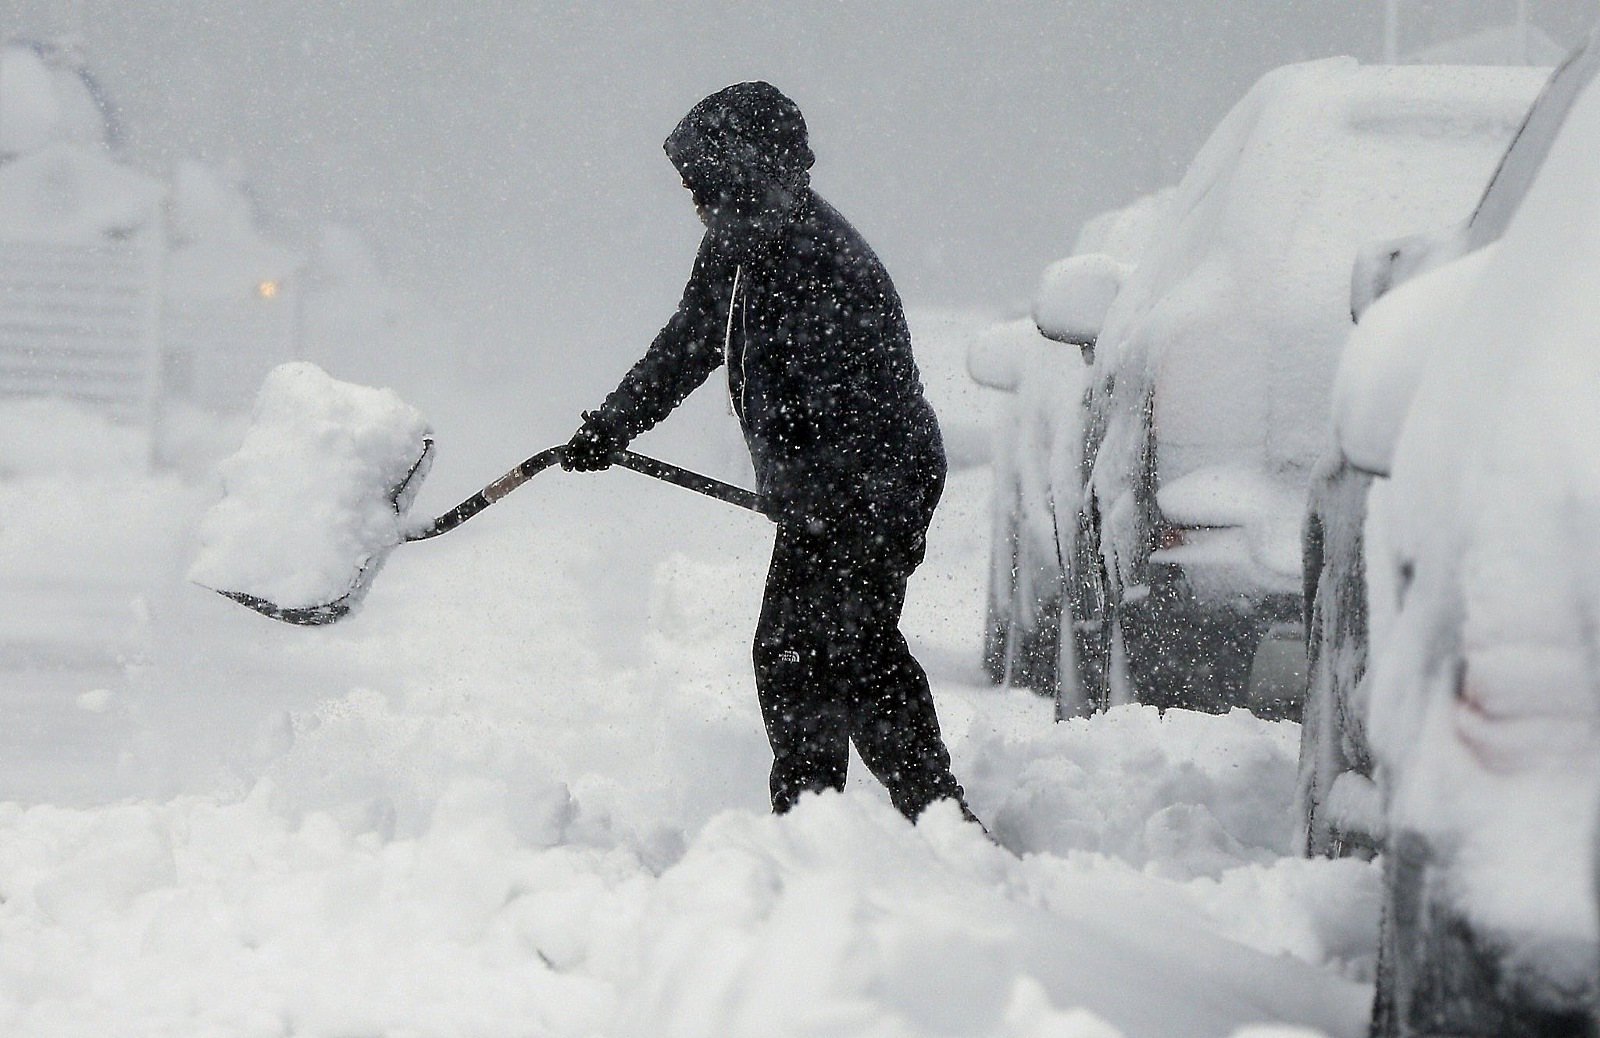 Un estudio afirma que los inviernos son cada vez más fríos en el Tirol austriaco